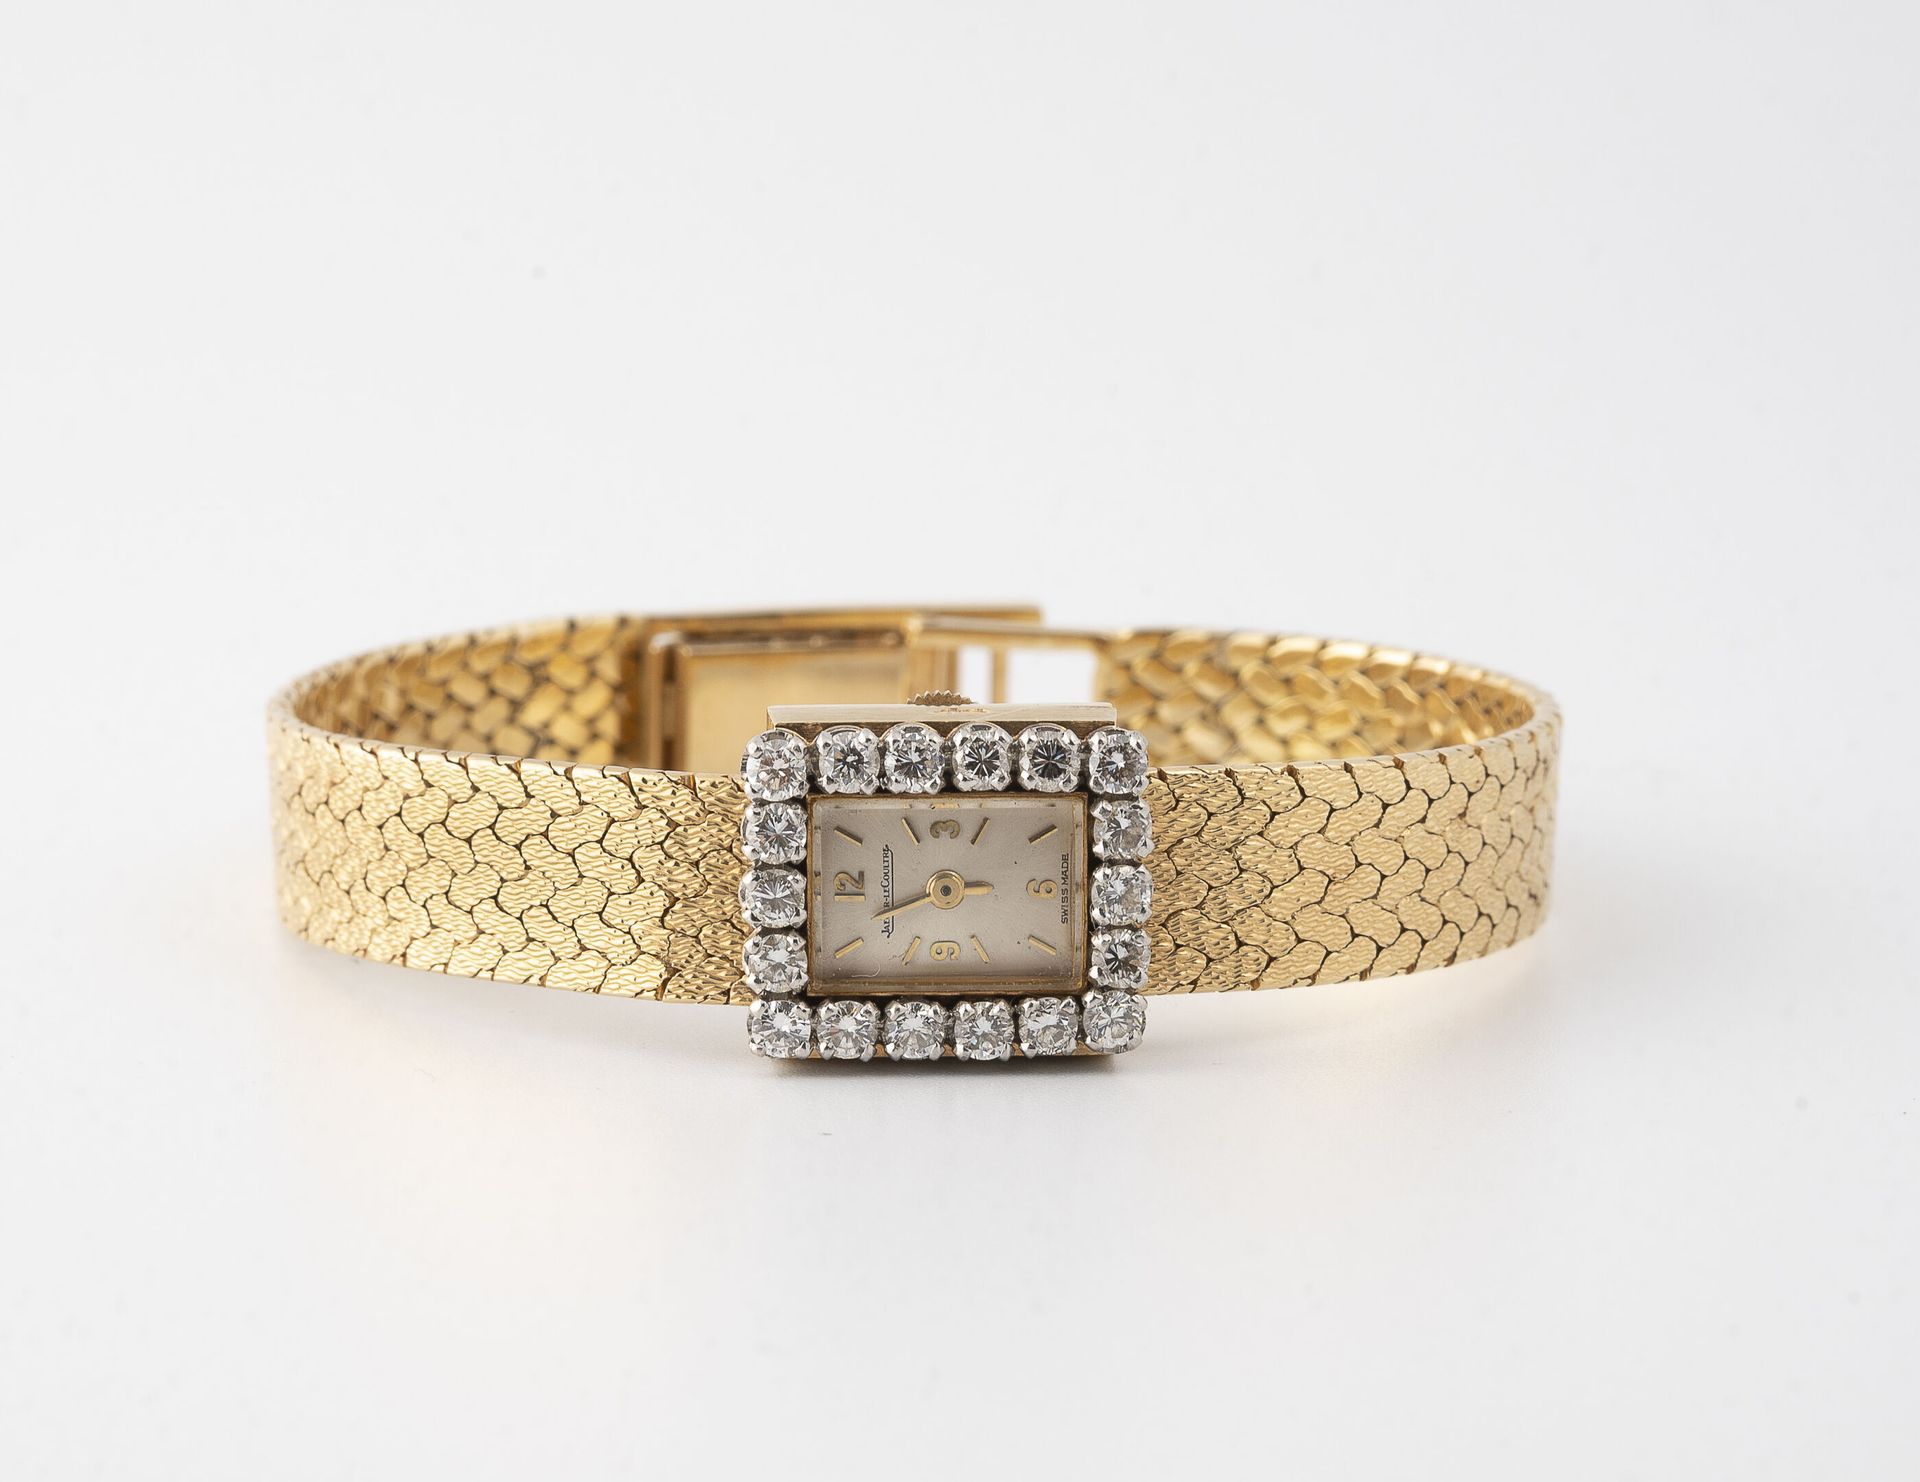 JAEGER LECOULTRE Reloj de pulsera de señora en oro amarillo (750).

Caja cuadrad&hellip;